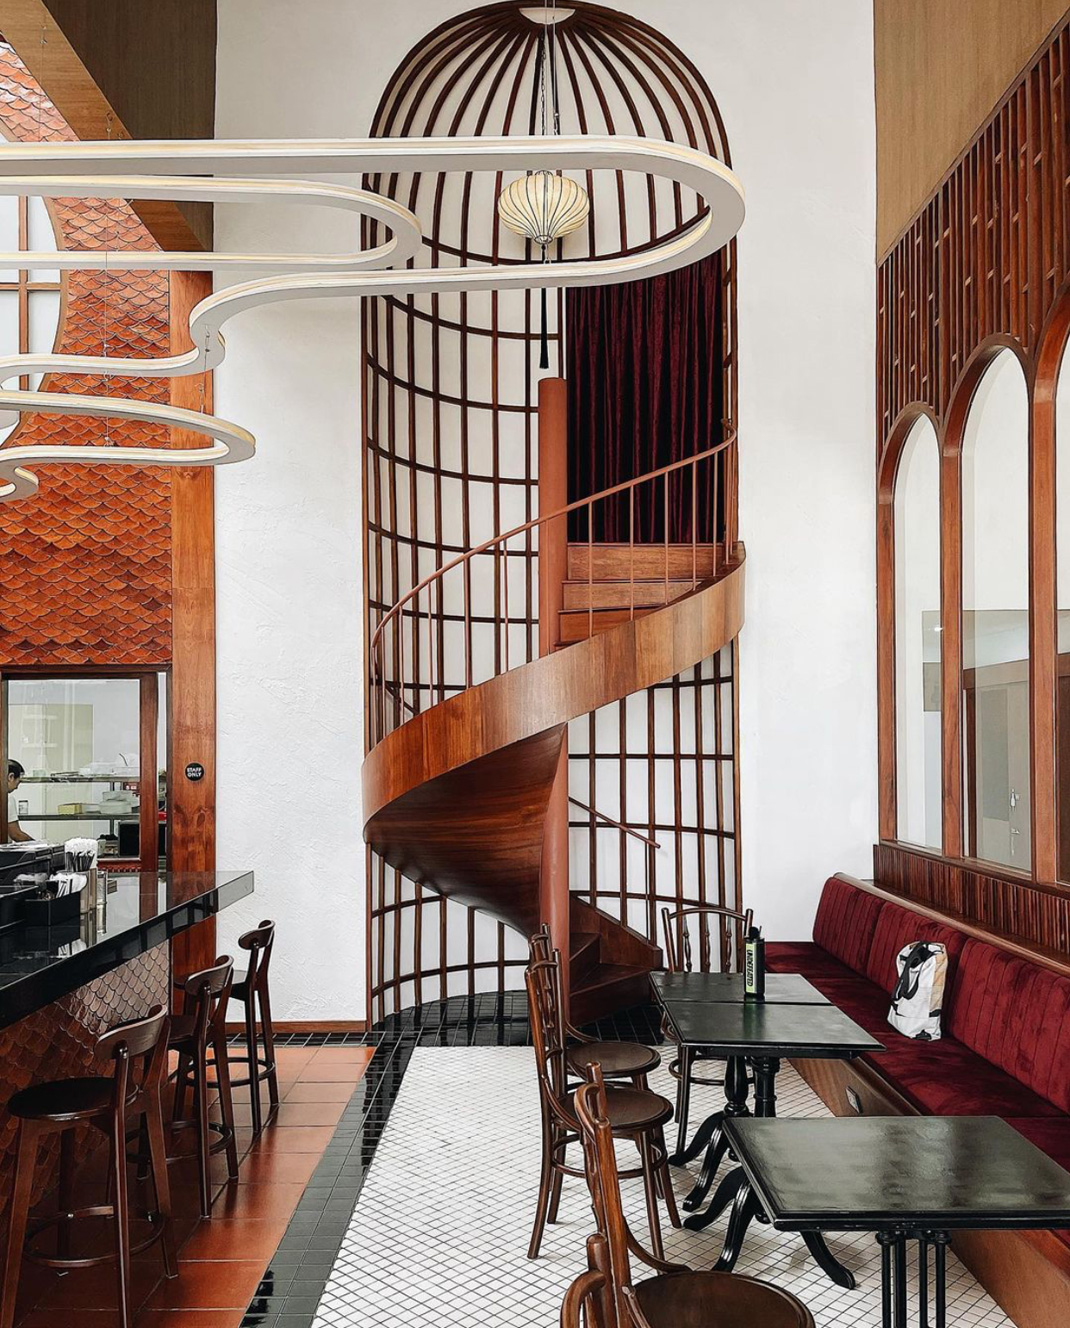 咖啡馆Coffee Ngeggee 泰国 清迈 咖啡馆 腐蚀板 咖啡色 木色 老房子 logo设计 vi设计 空间设计